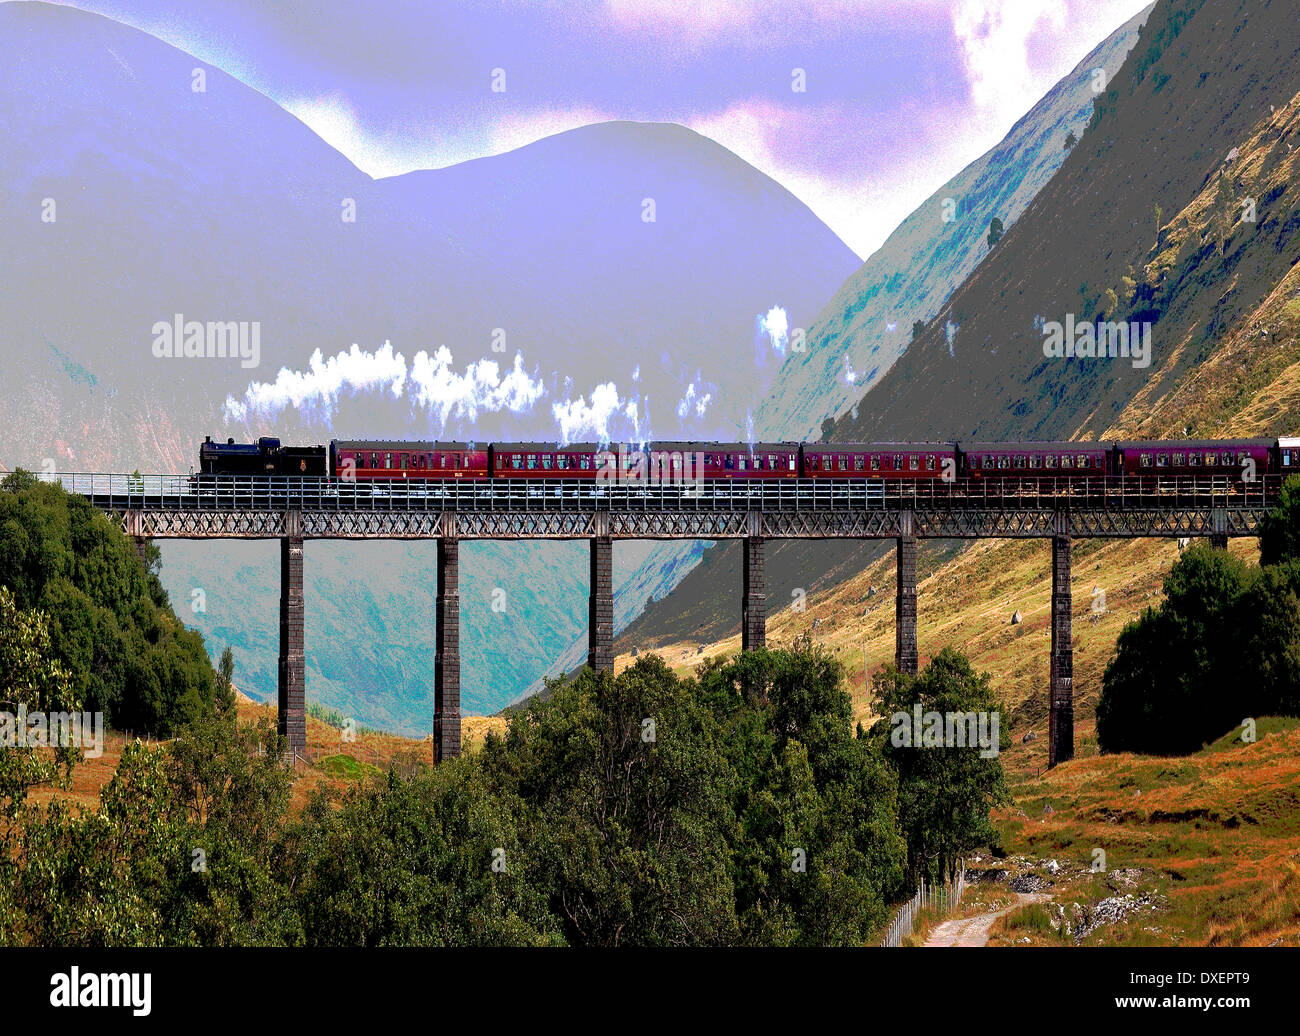 El arte abstracto, un tren de vapor atravesando Auch viaducto, West Highlands. Foto de stock